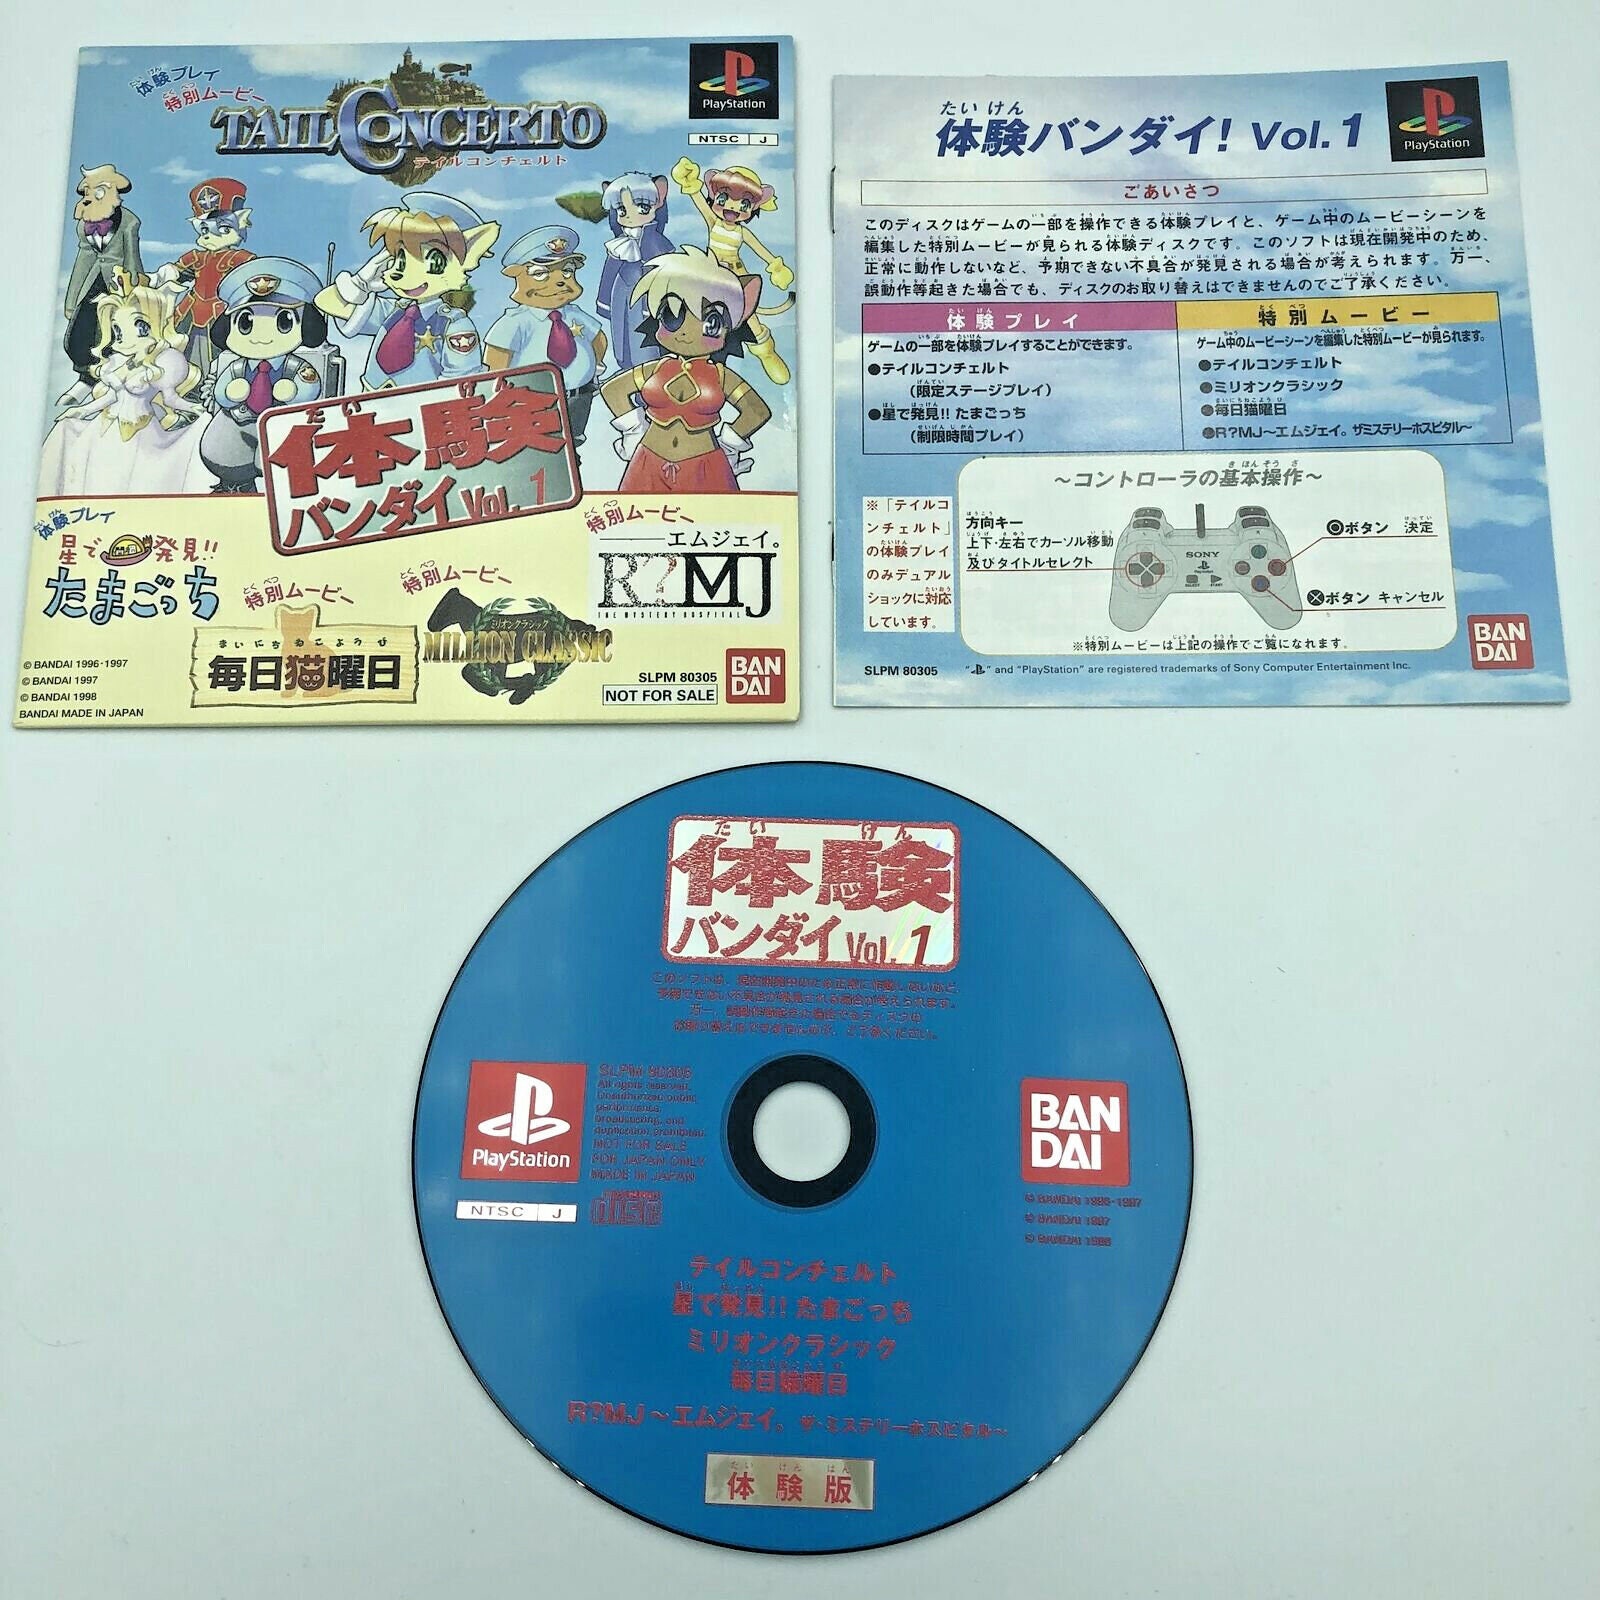 Bliv kærlighed Skulptur Tail Concerto Demo Disc Playstation PS1 Japan Bandai Demo Vol. - Etsy